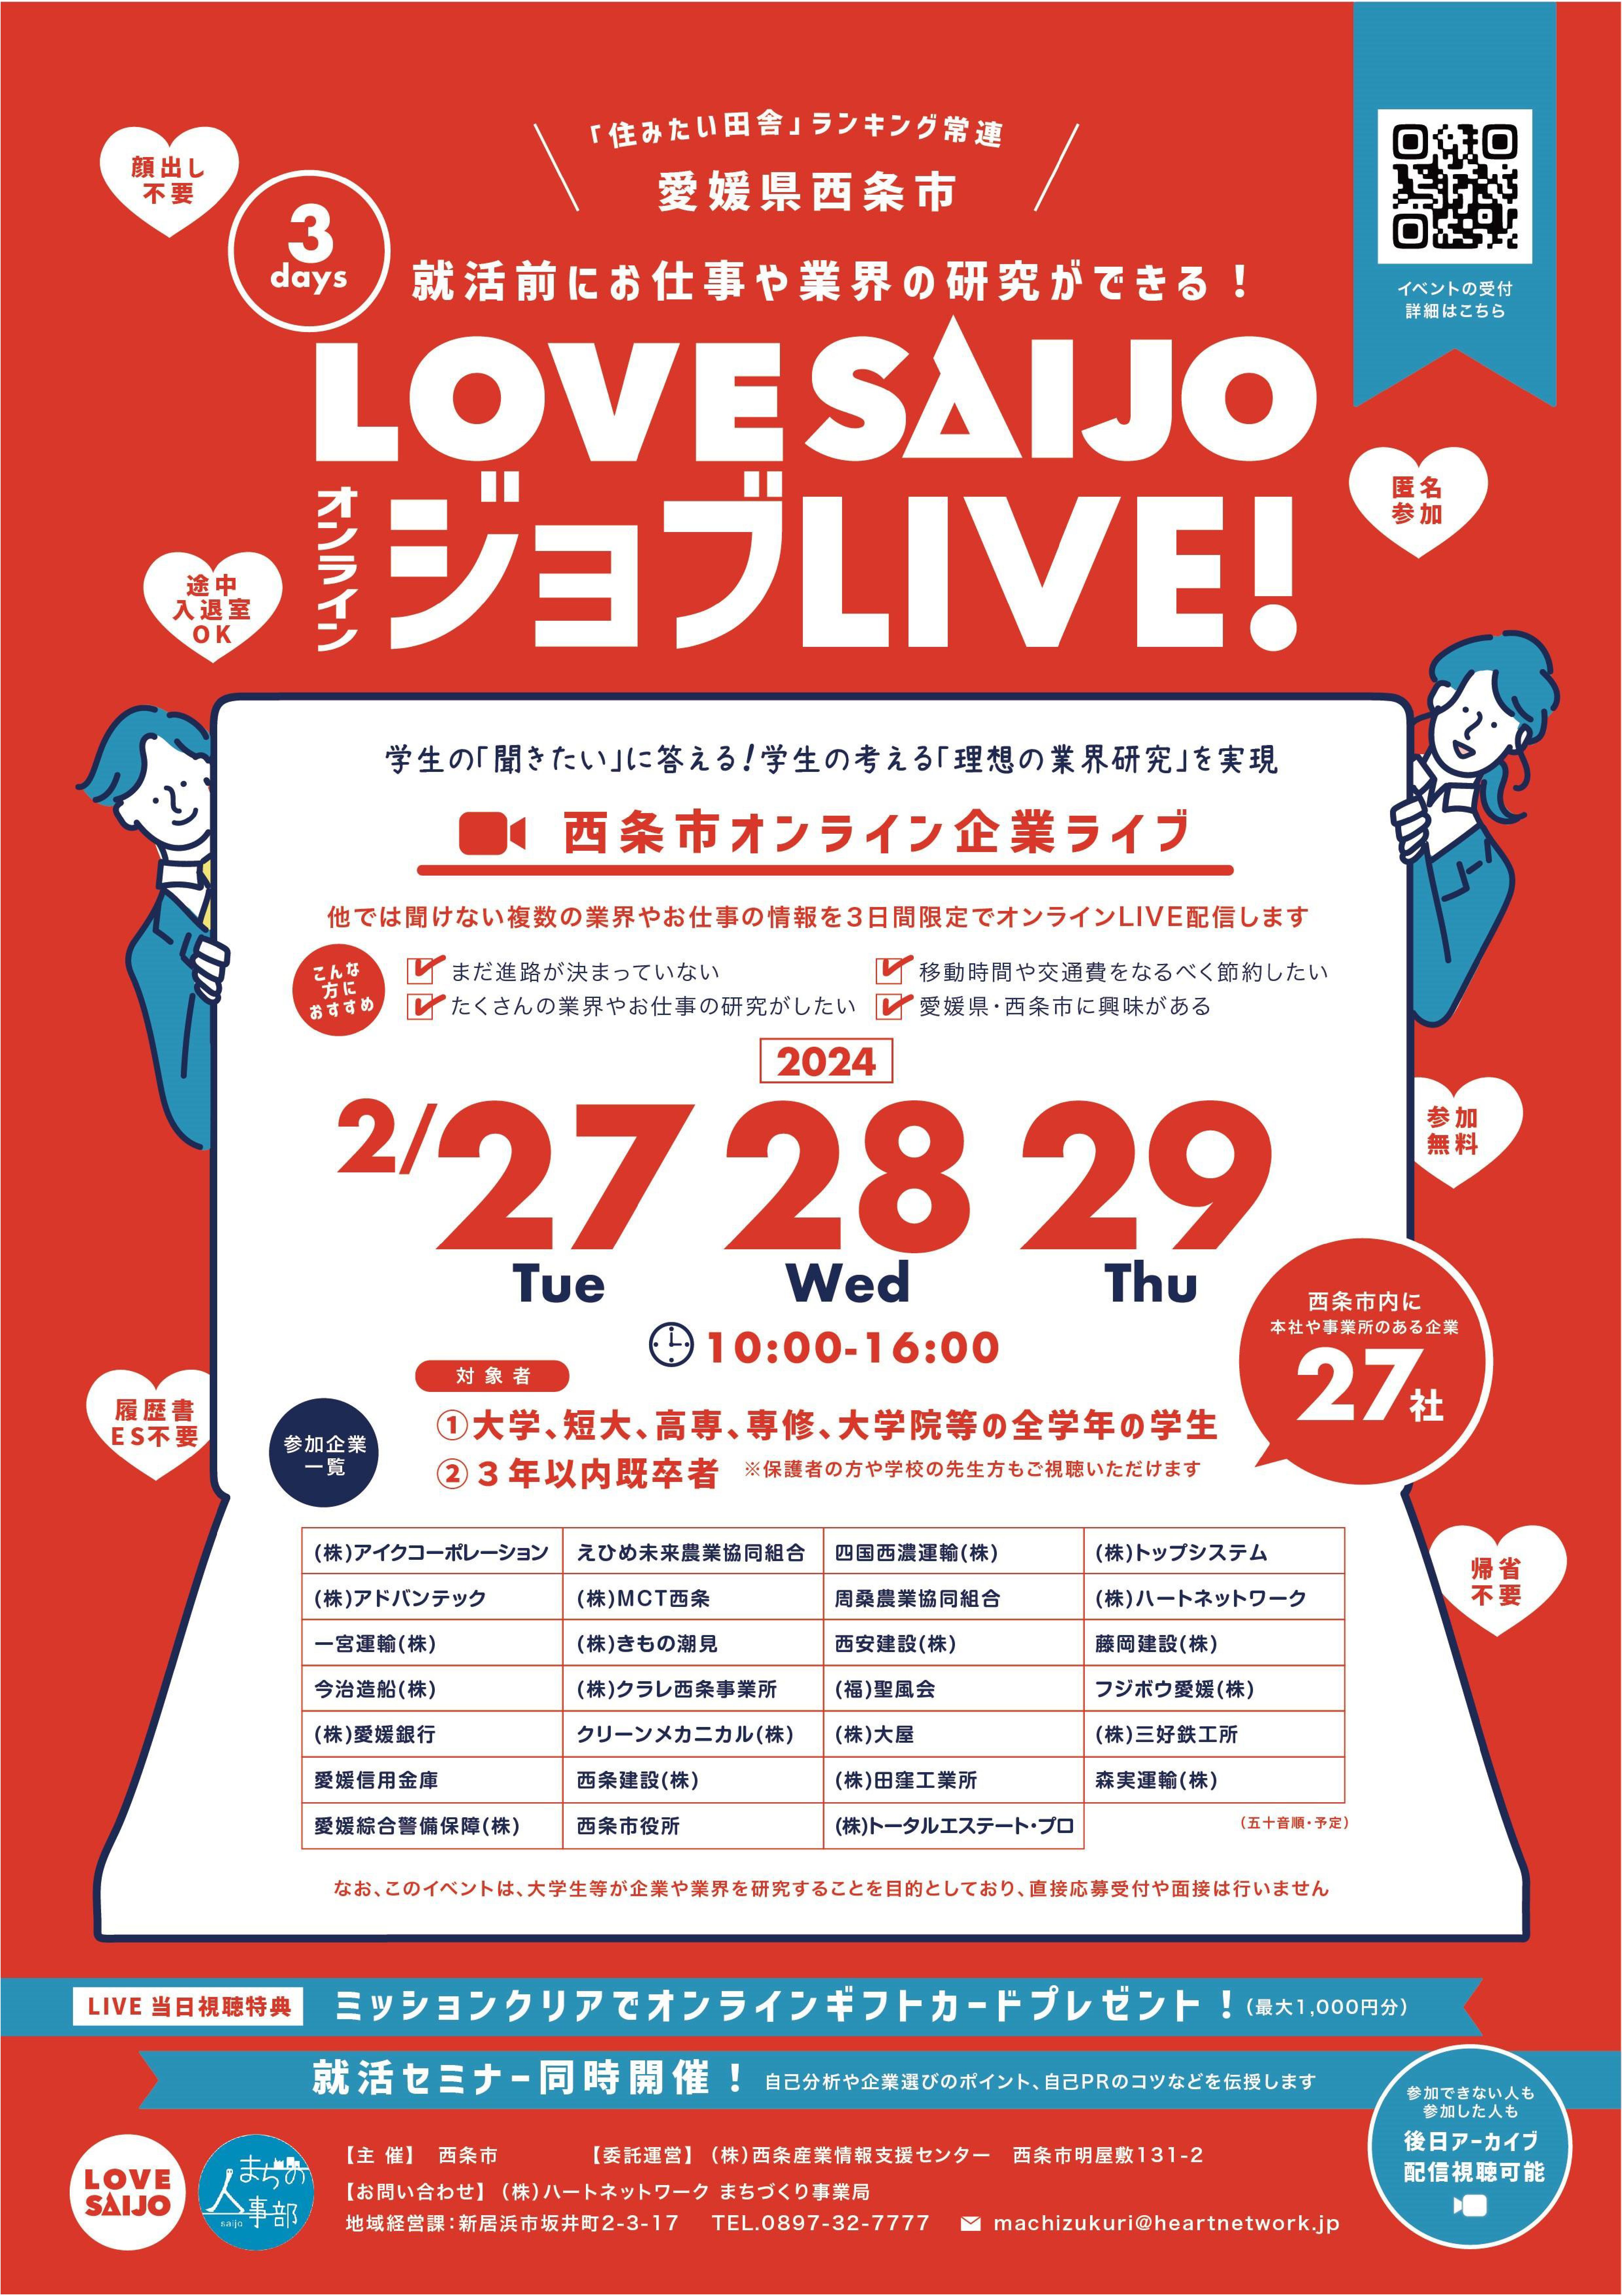 LOVE SAIJOオンラインジョブLIVE!